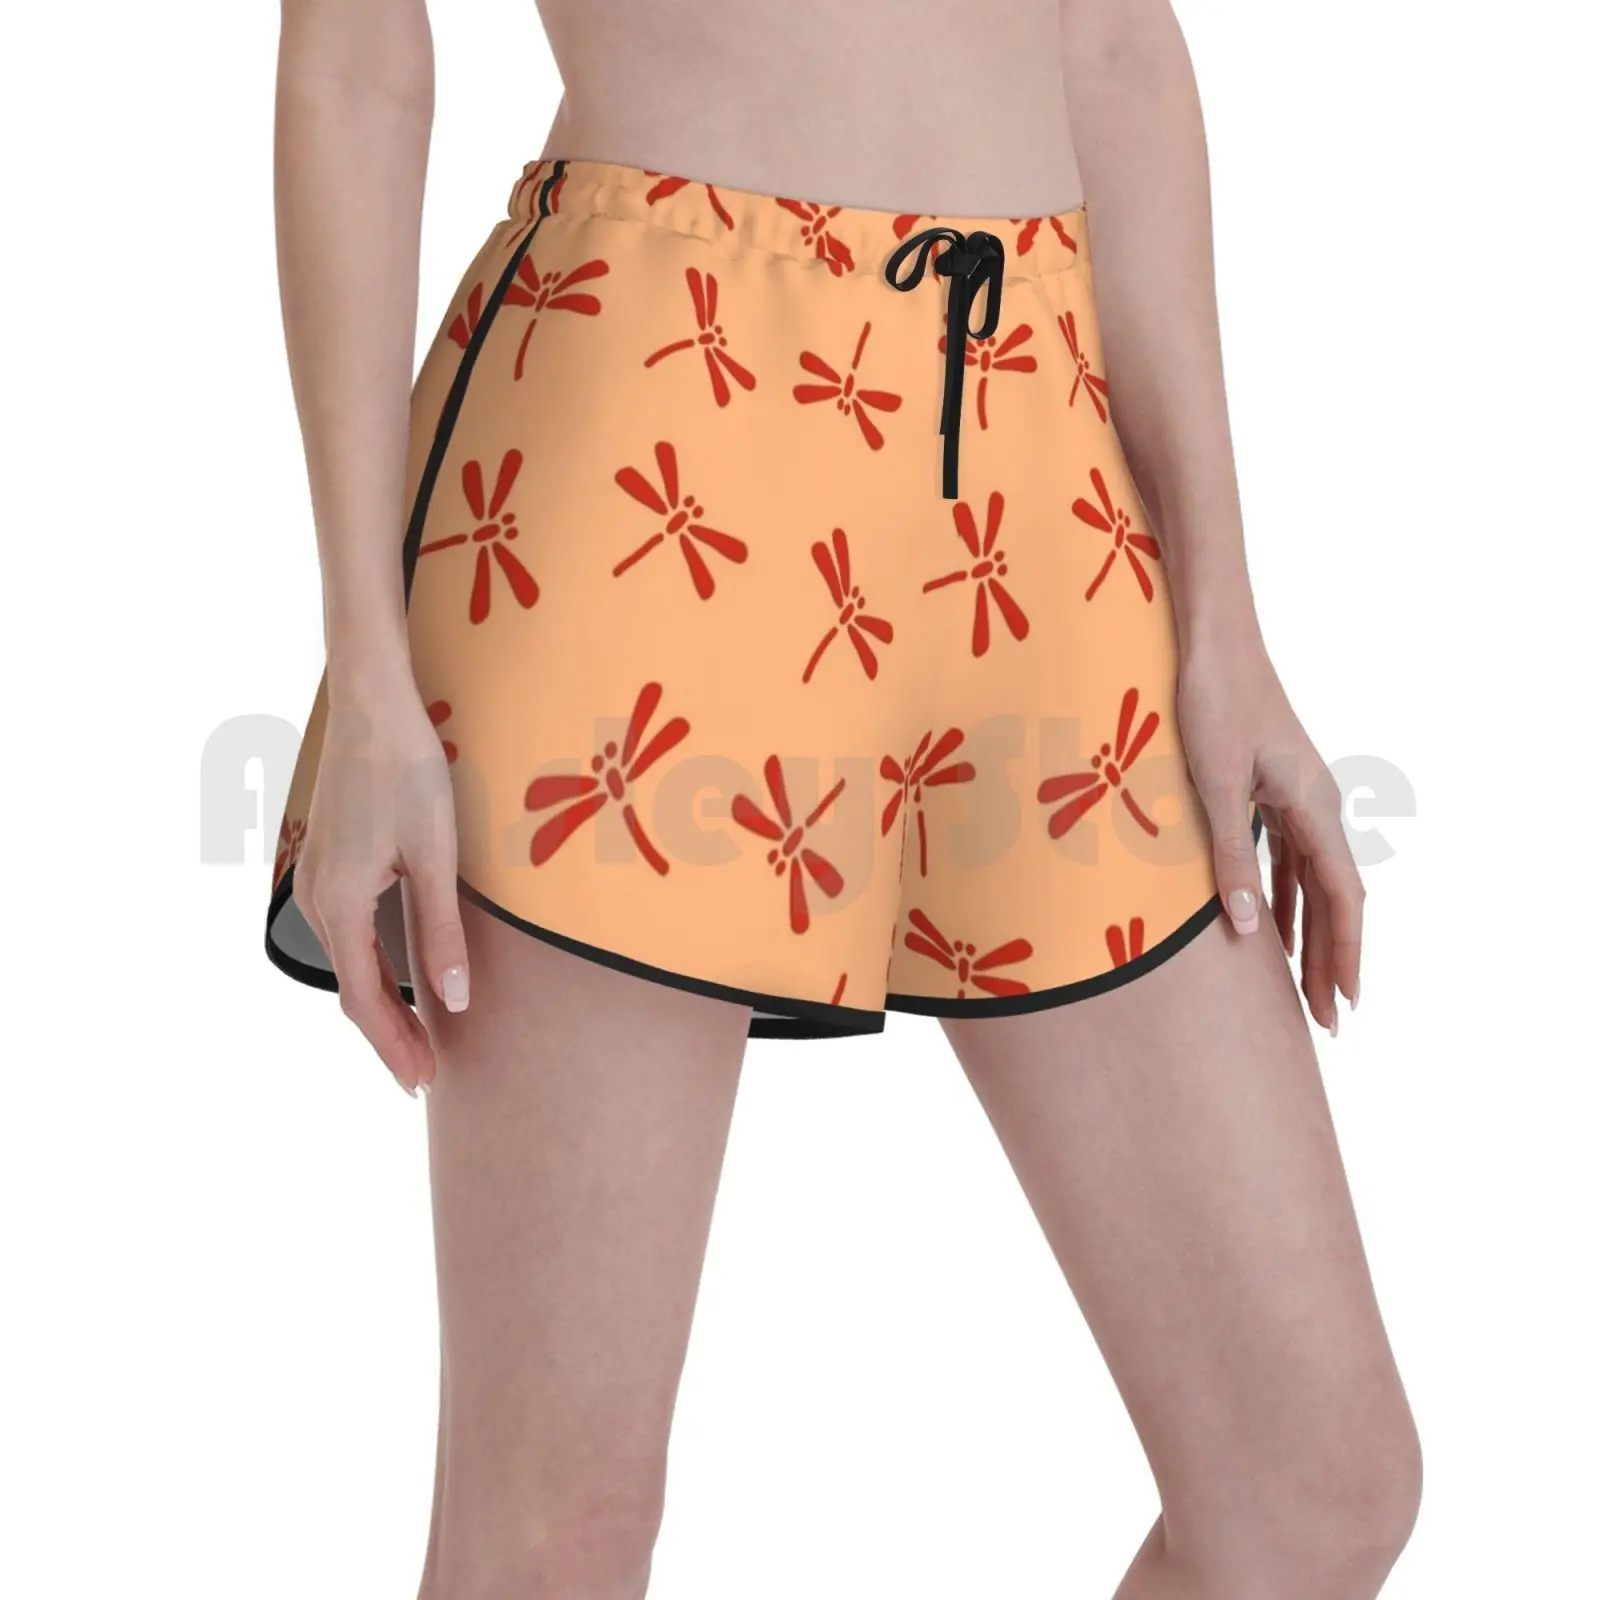 

Шорты для плавания женские с японским рисунком стрекозы, пляжные шорты оранжевого цвета, в японском традиционном японском стиле